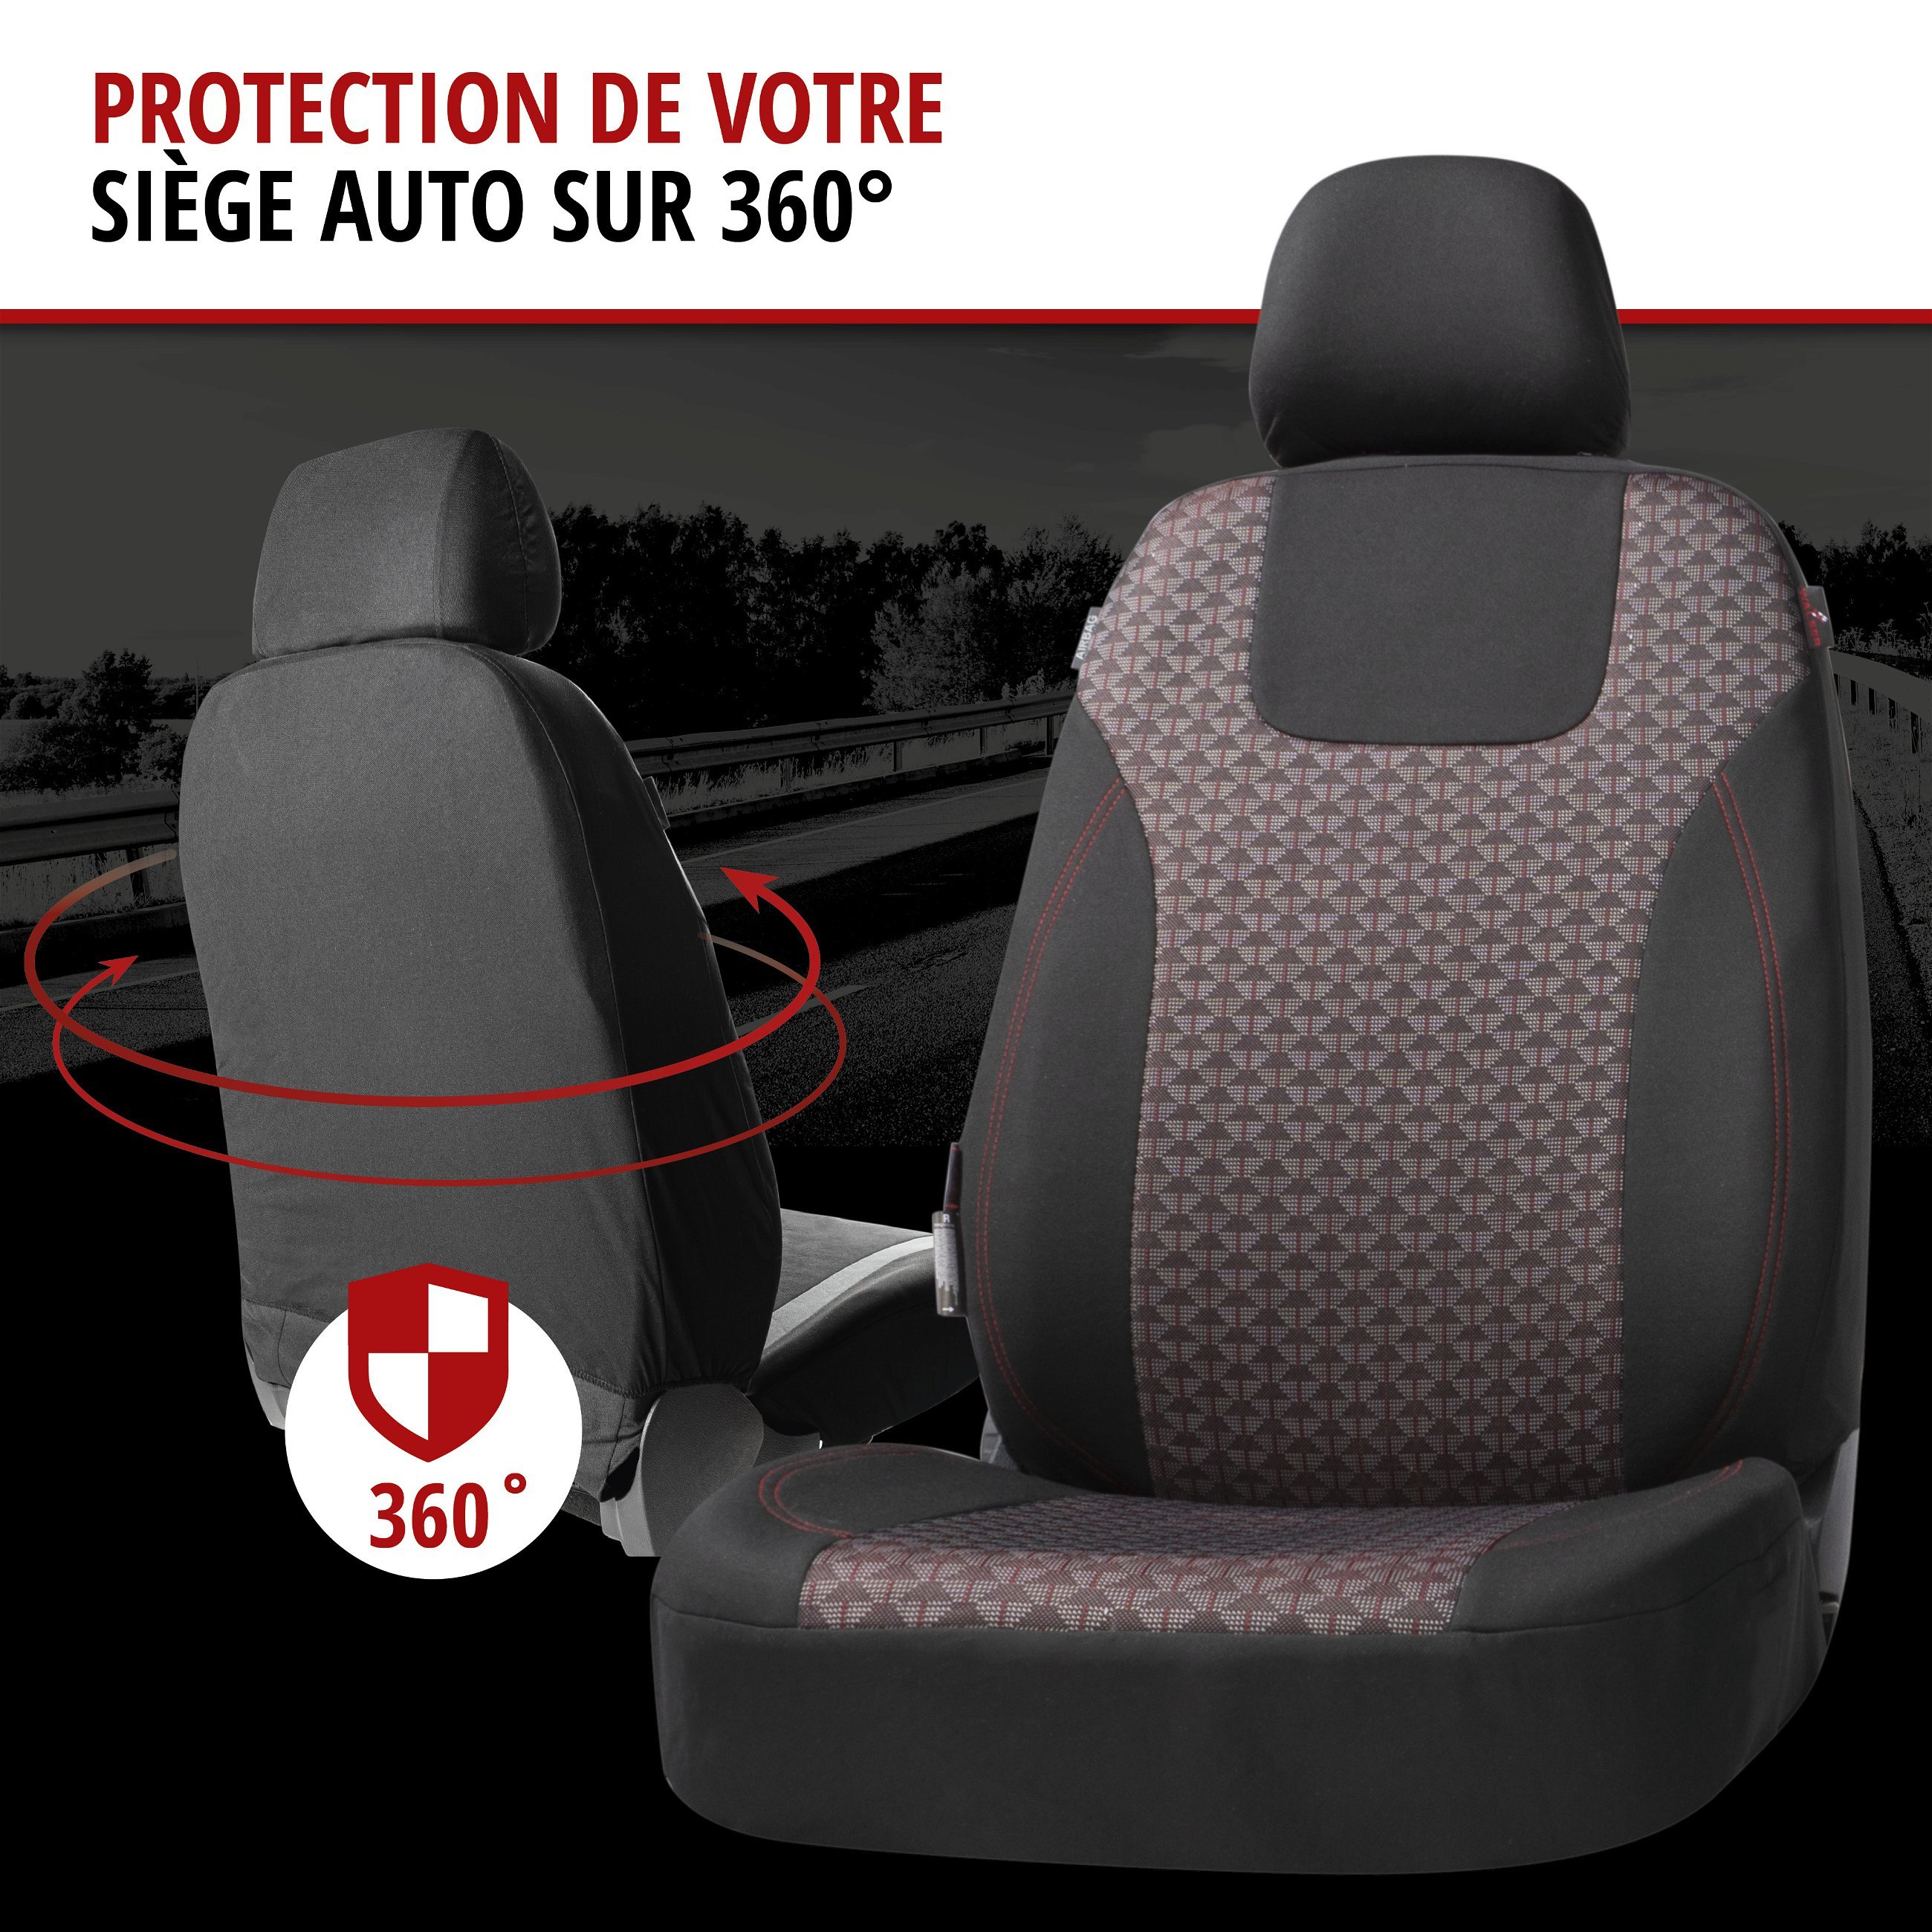 ZIPP IT Premium Housse de sièges Redring pour deux sièges avant avec système de fermeture éclair noir/rouge